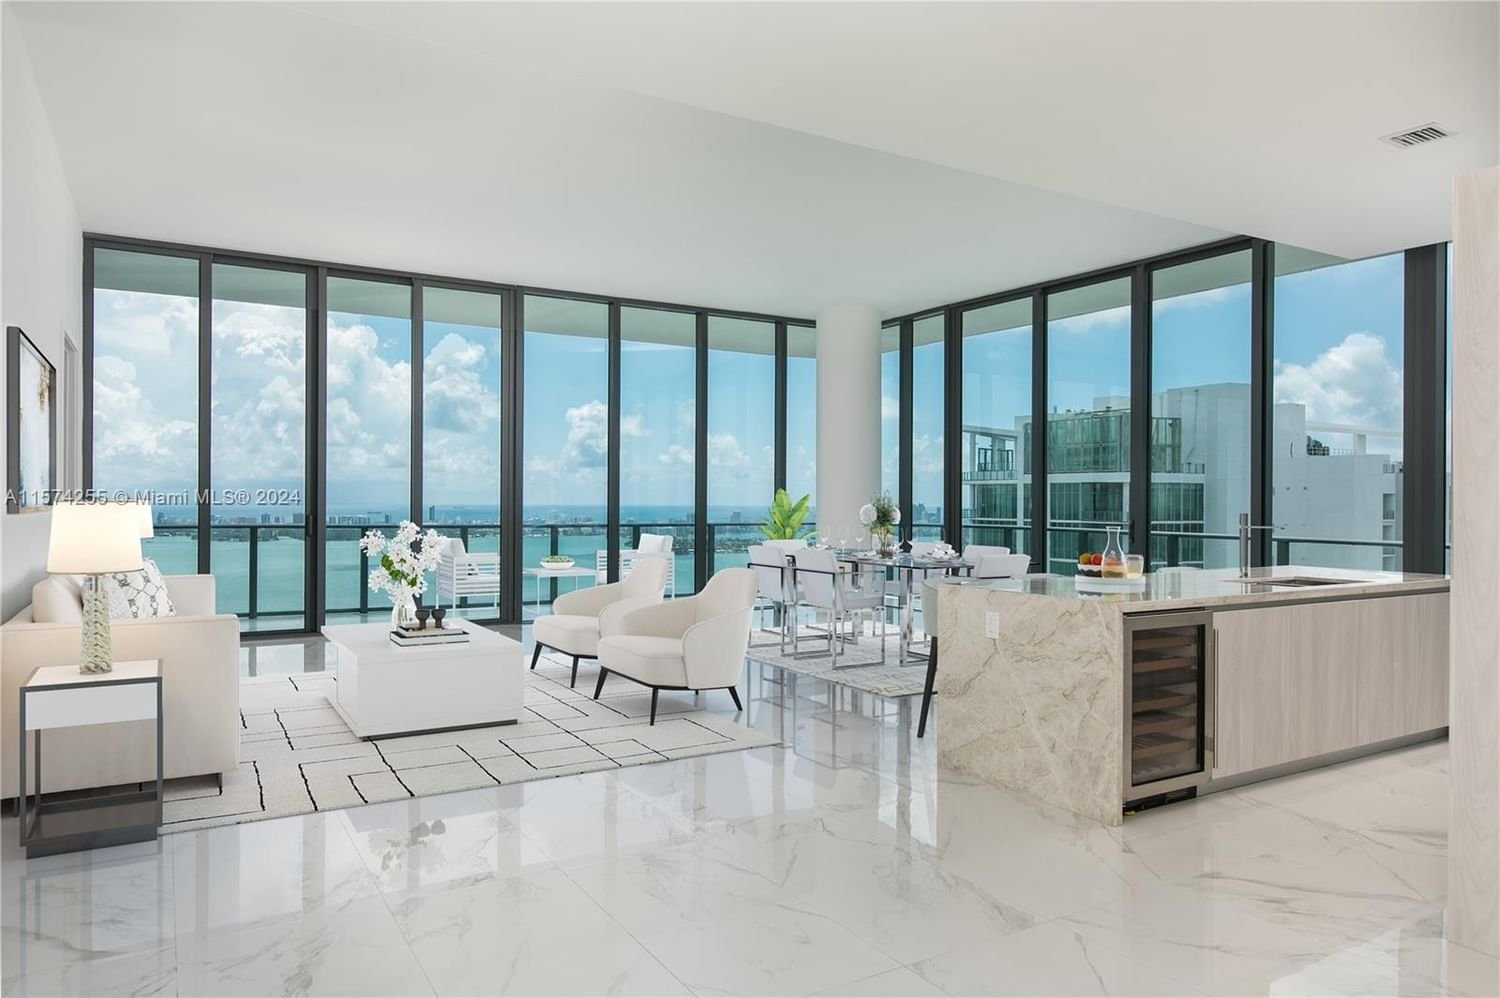 Real estate property located at 480 31st St PH5101, Miami-Dade County, GRAN PARAISO CONDO, Miami, FL